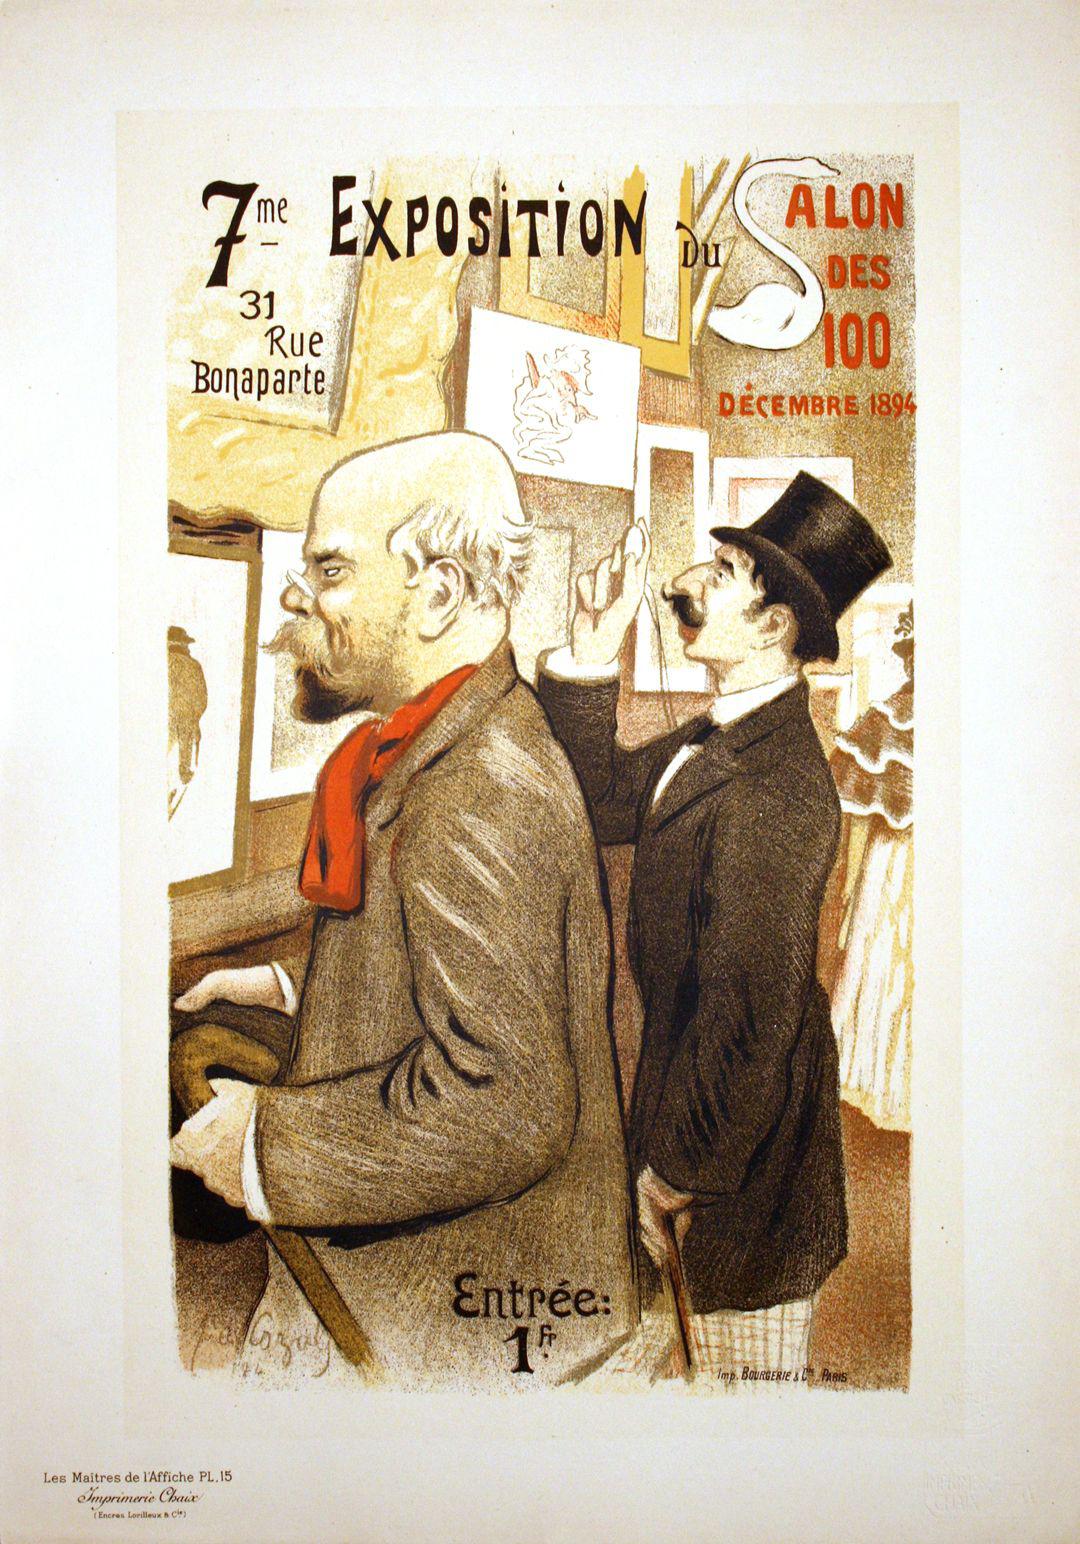 Original Maitre de L'Affiche - PL 15 by Frederic-Auguste Cazals c1895 - 7ieme Exposition du Salon des Cents